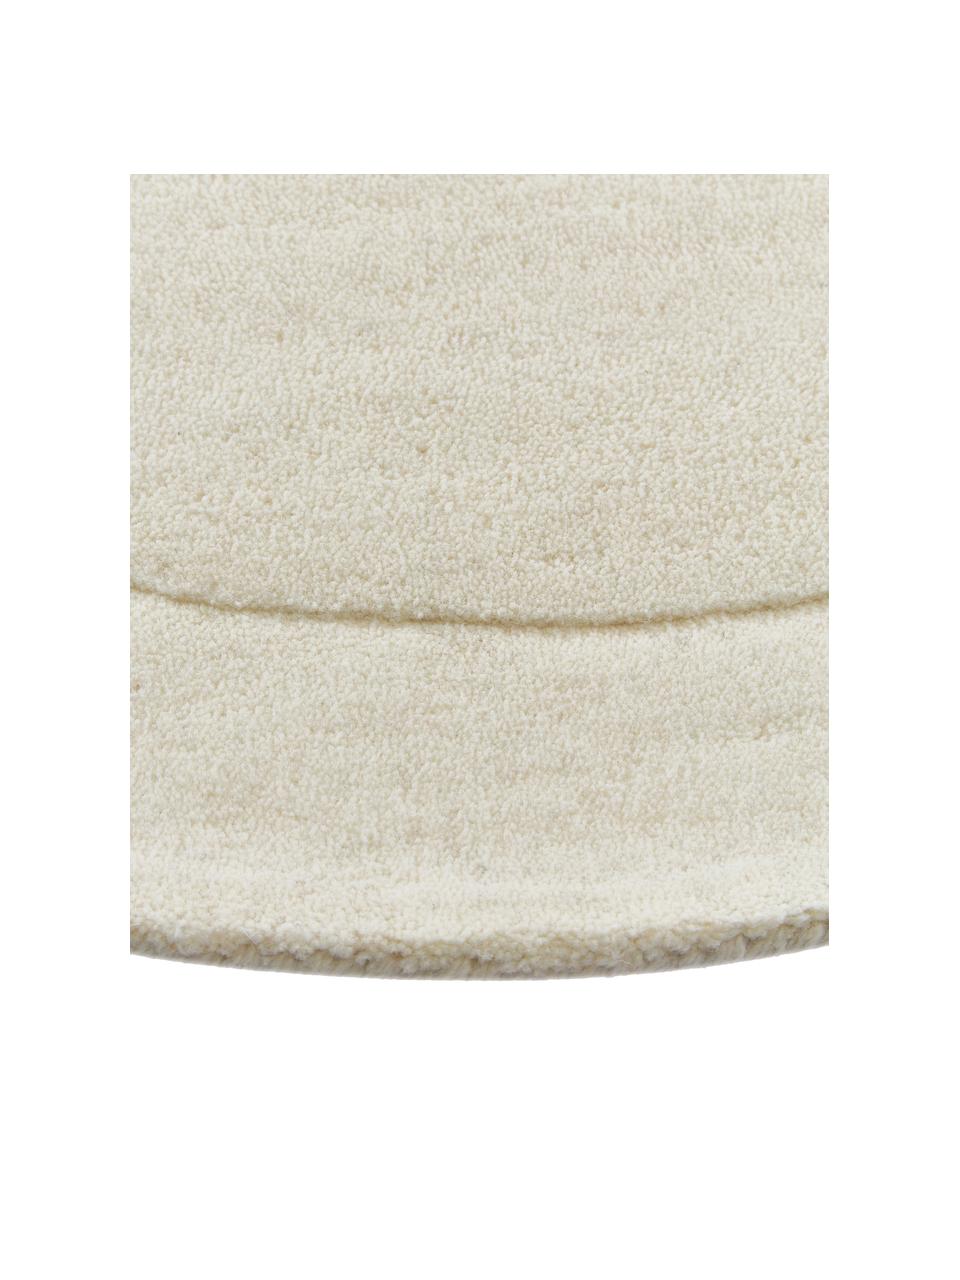 Tappeto in lana taftato a mano dalla forma organica Kadey, Retro: 100% cotone Nel caso dei , Bianco crema, Larg. 120 x Lung. 180 cm (taglia S)